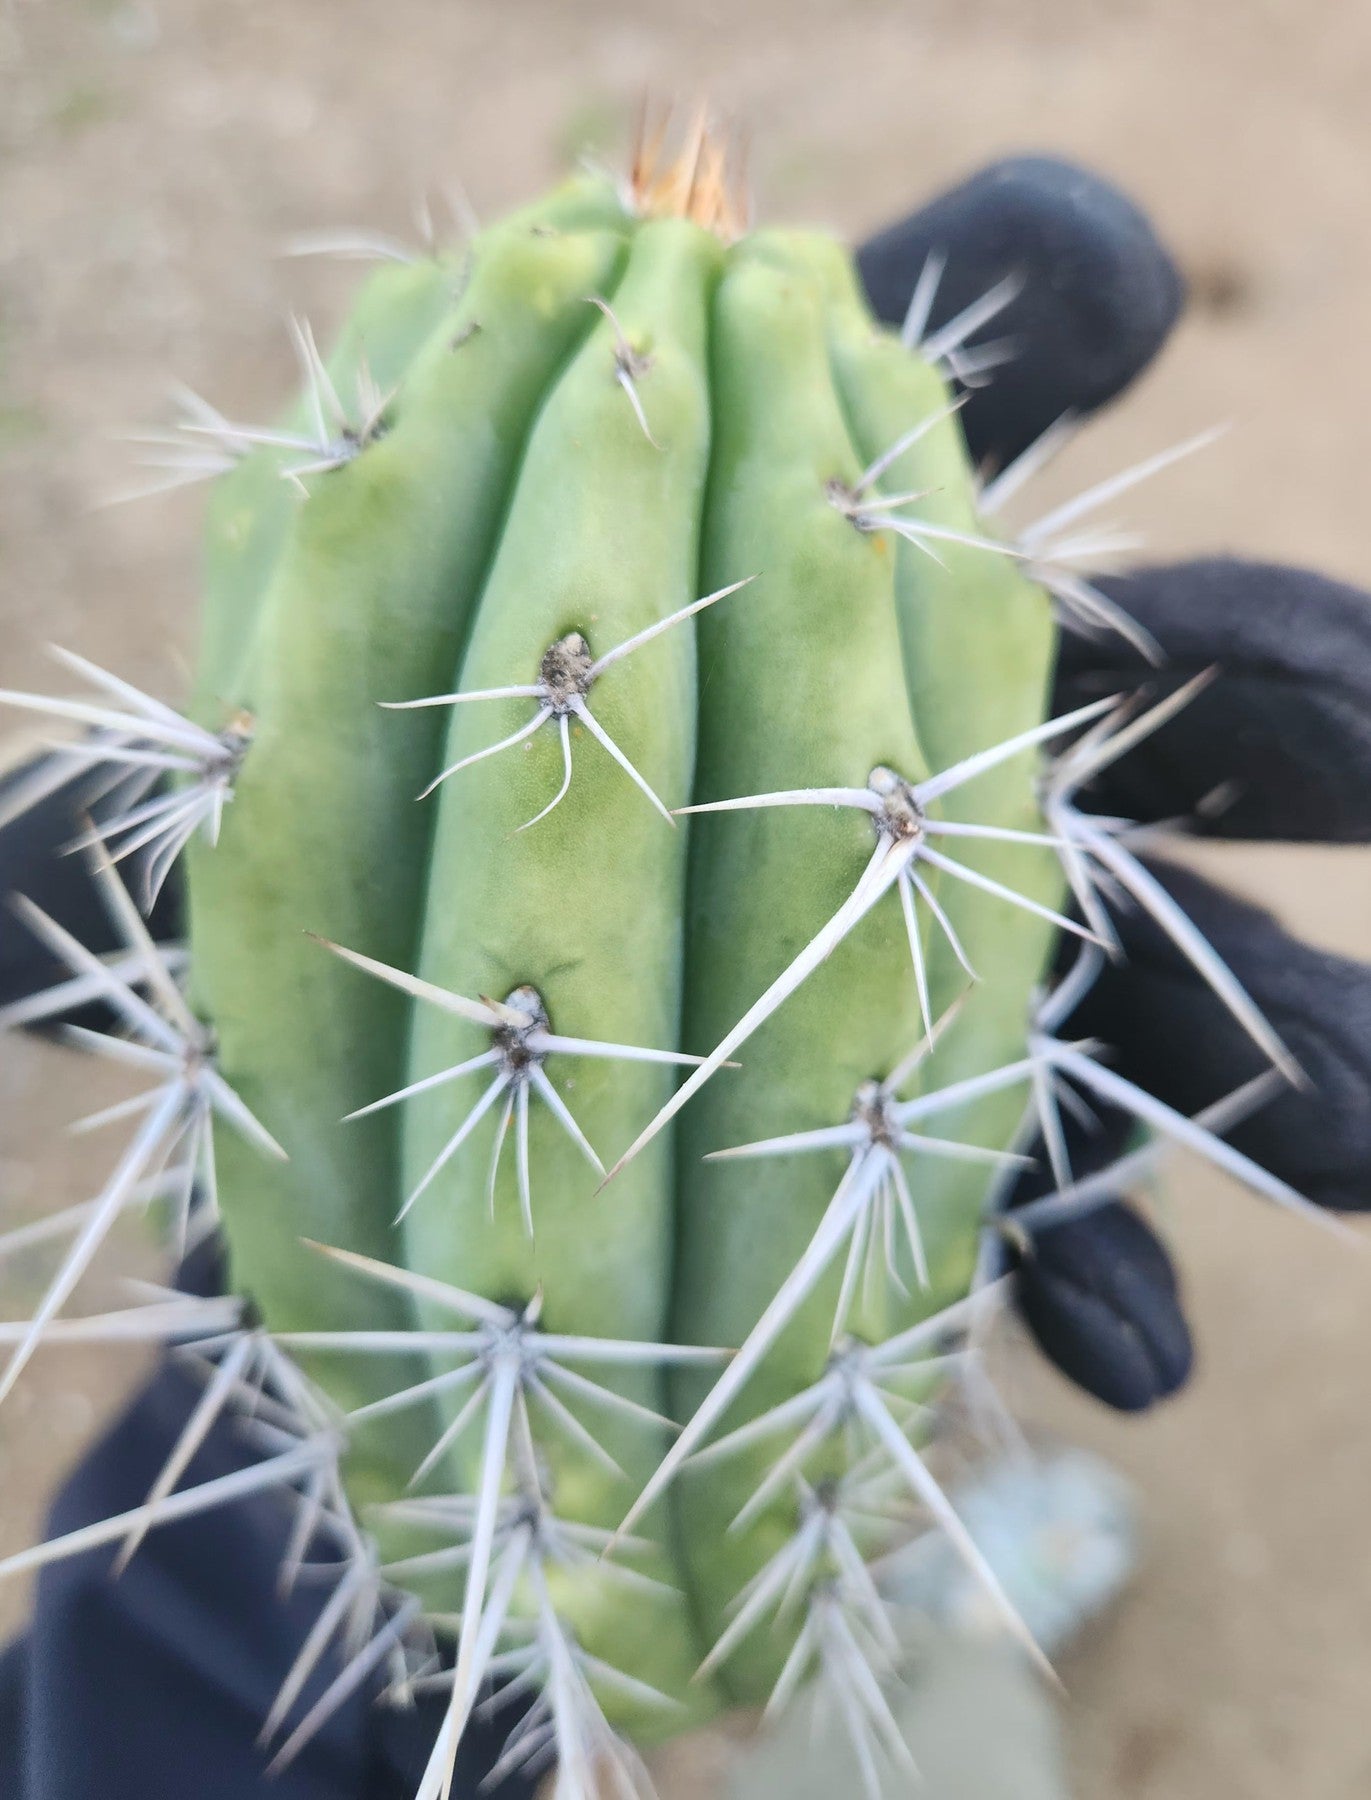 #EC304 EXACT Trichocereus Puquiensis "Linda" Cactus Cutting 5-6"-Cactus - Large - Exact-The Succulent Source